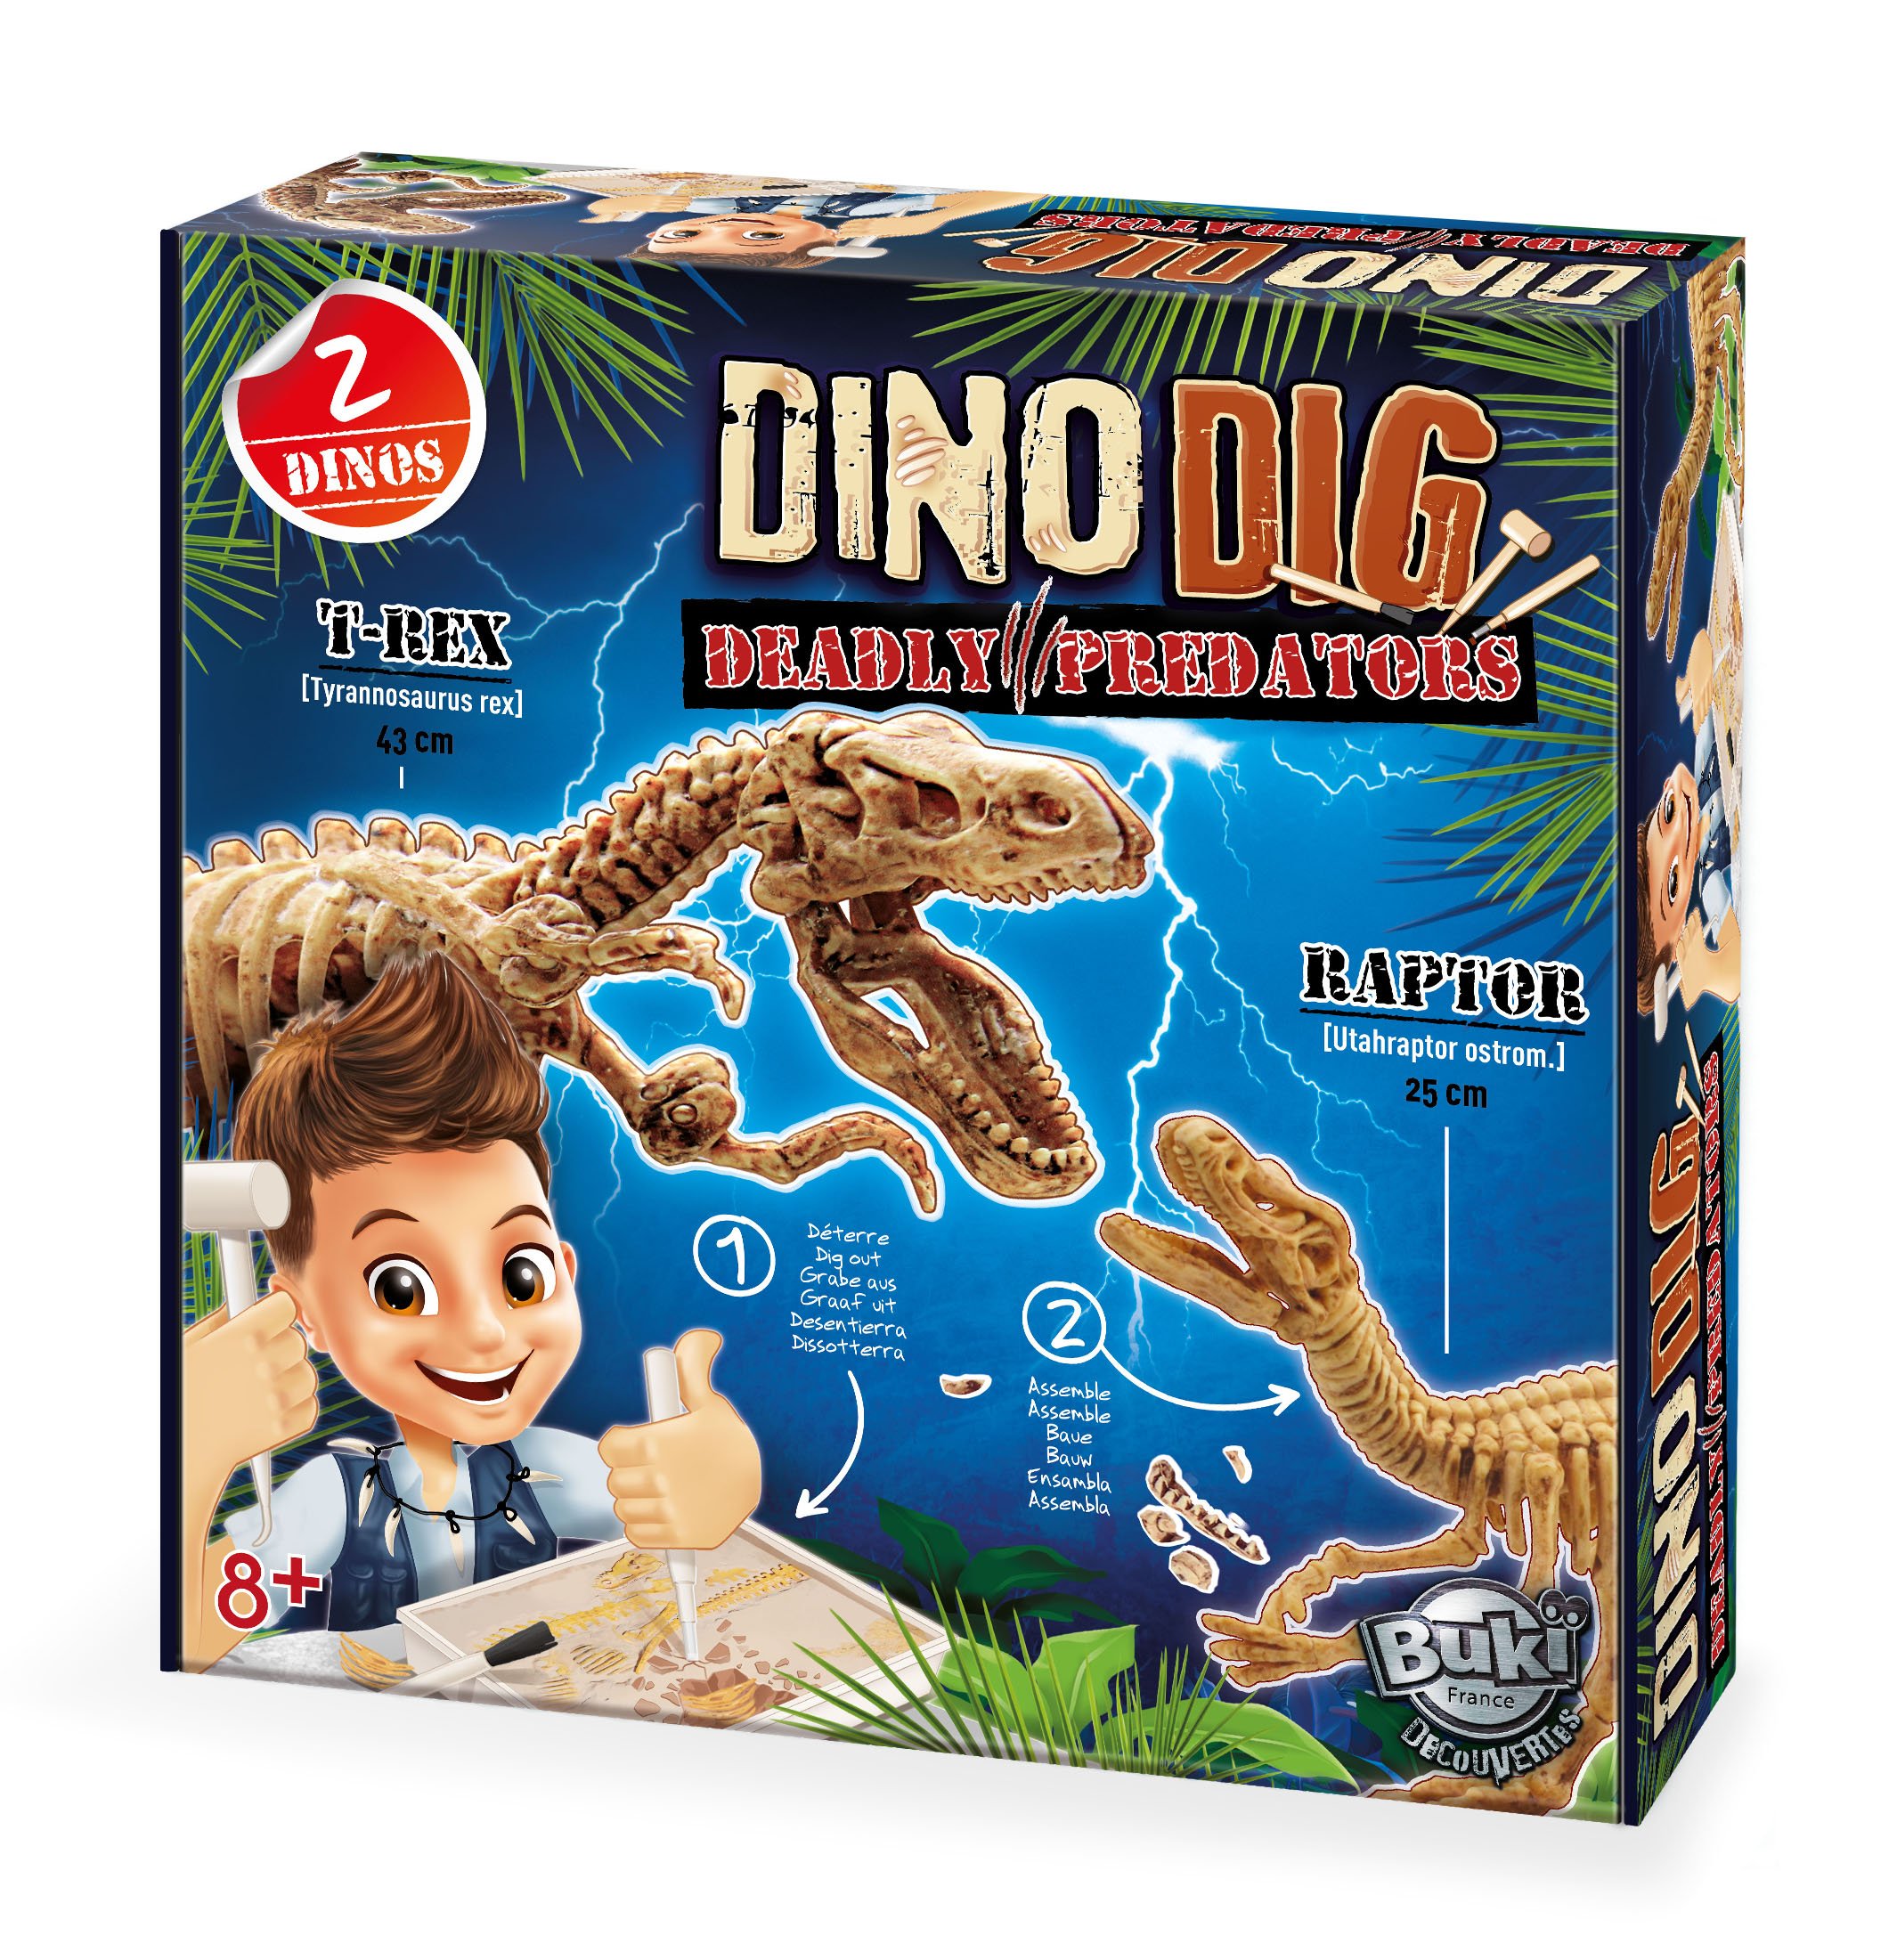 Buki France Dino Dig